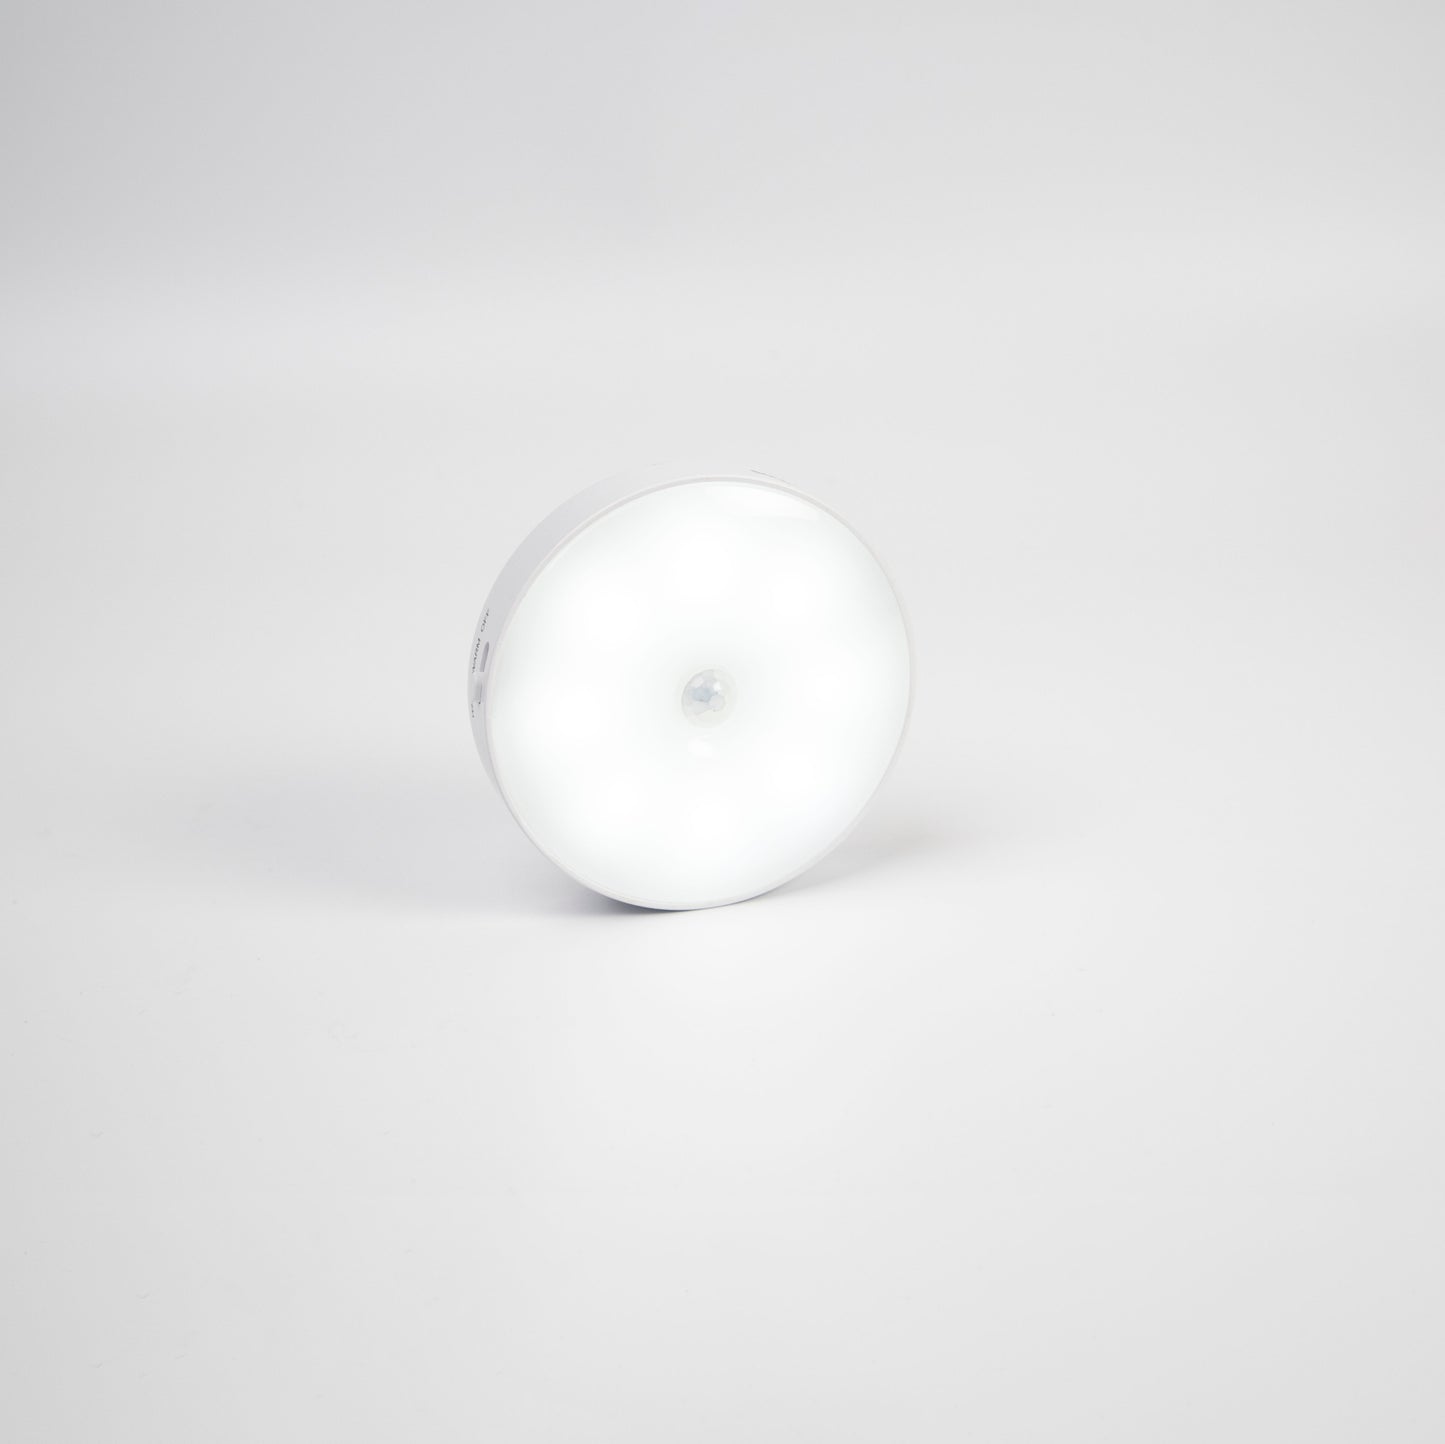 SOLMIRA® Luces Nocturnas con Sensor de Movimiento, Pack de 6, Inalámbricas, con Placa Adhesiva para Superficies Plana, Certificado CE